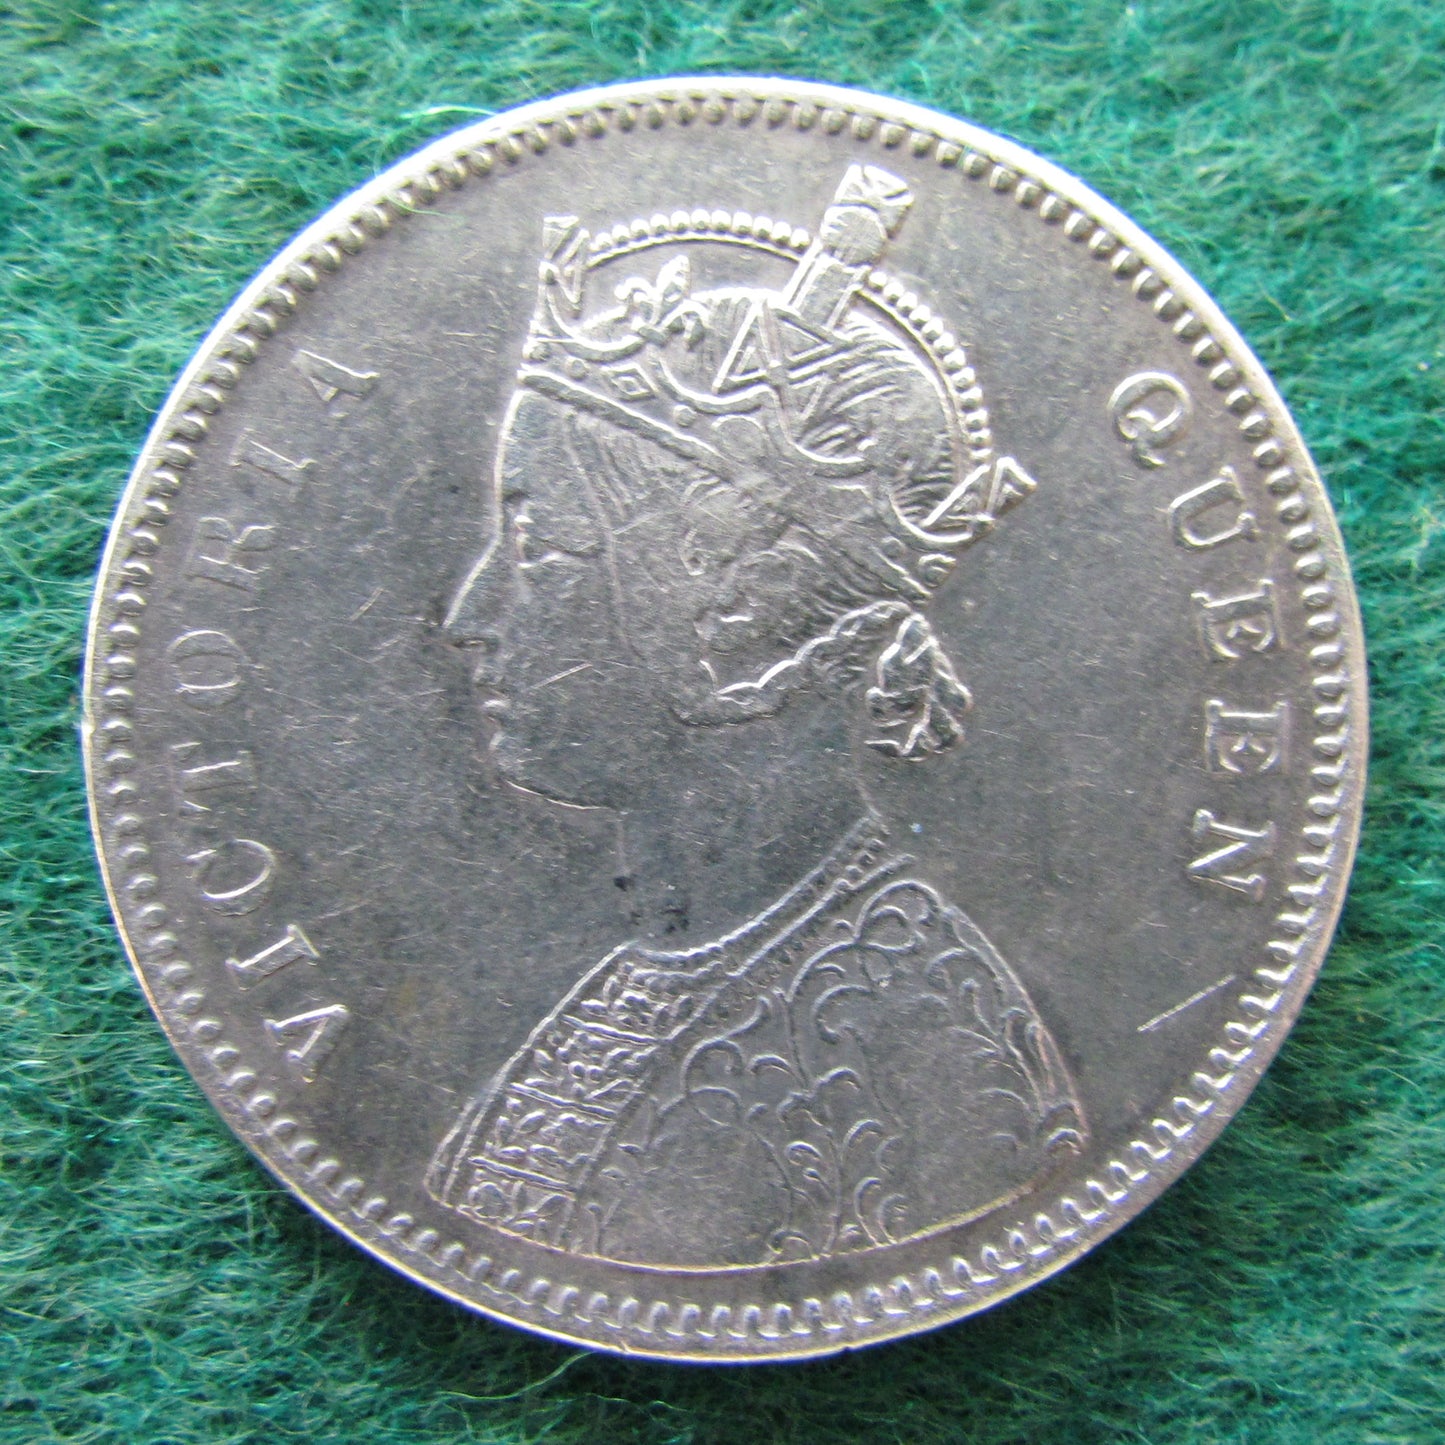 India 1862 Rupee Coin